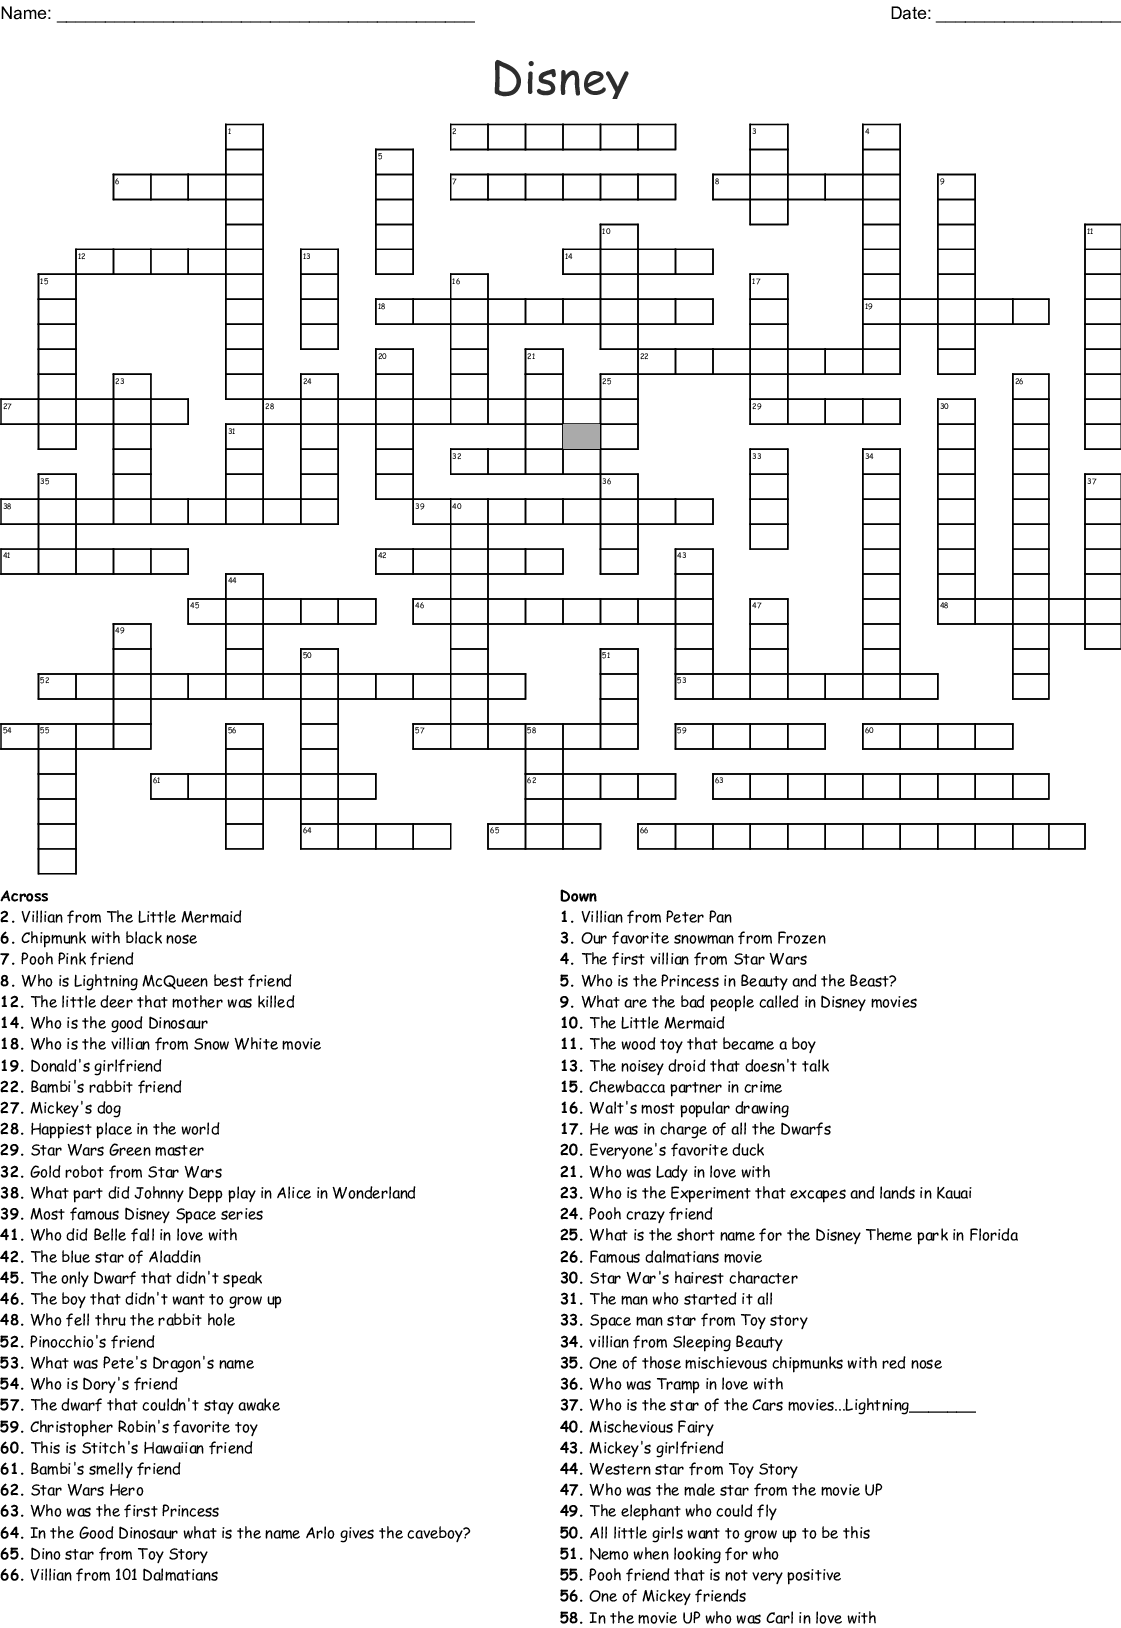 Free Printable Disney Crossword Puzzles